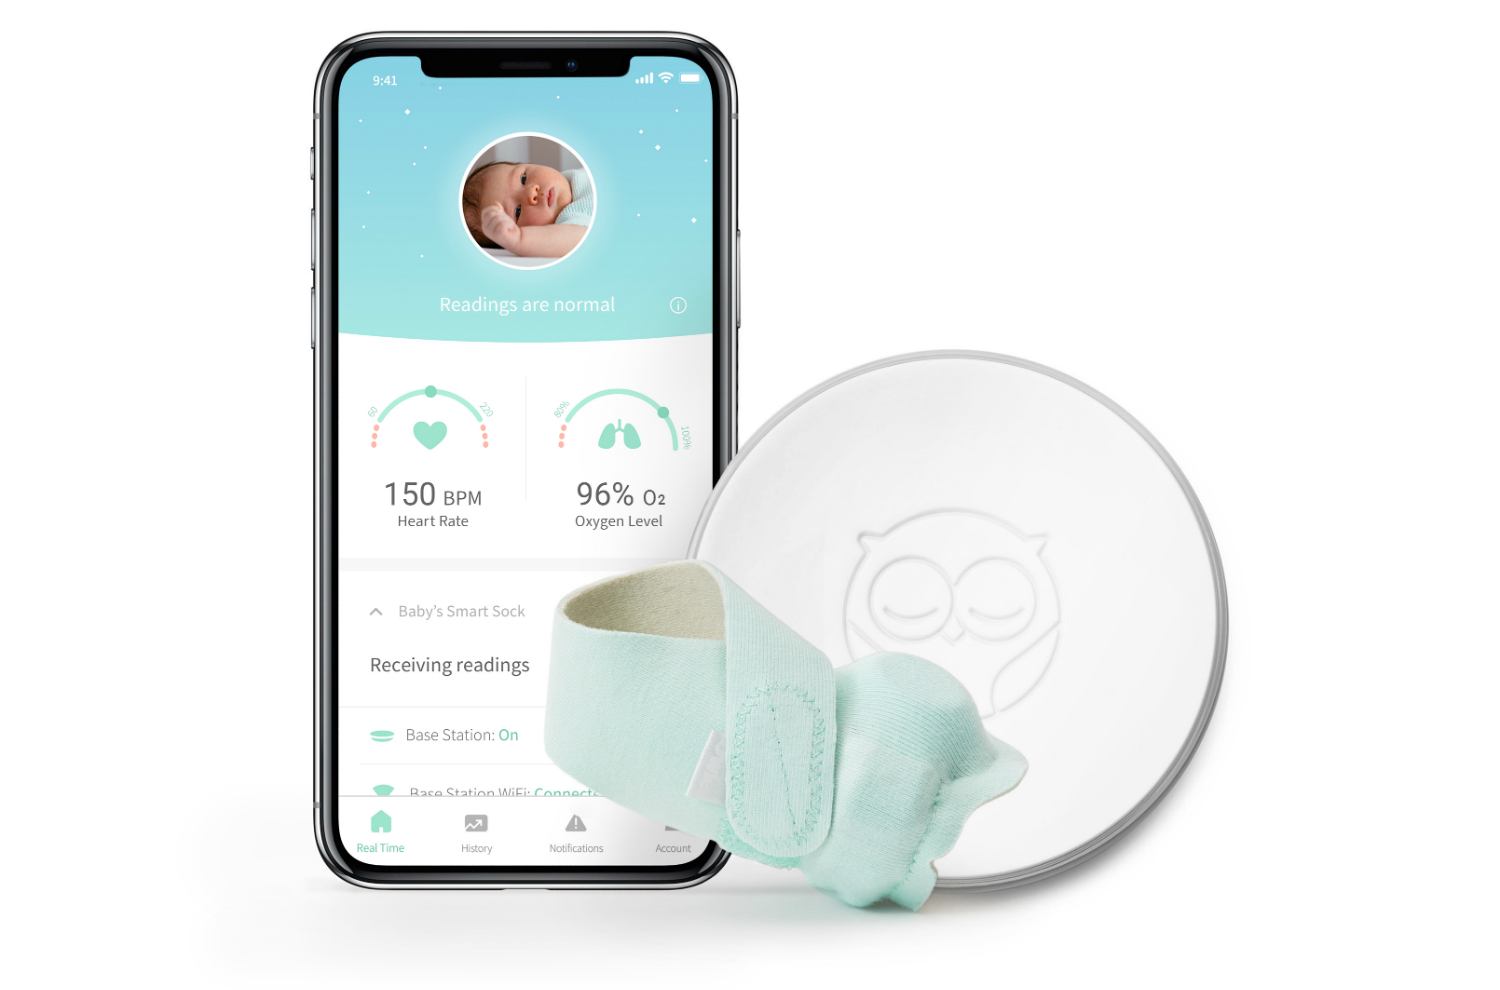 walmart offers sweet deals on owlet smart sock 2 baby monitor 1